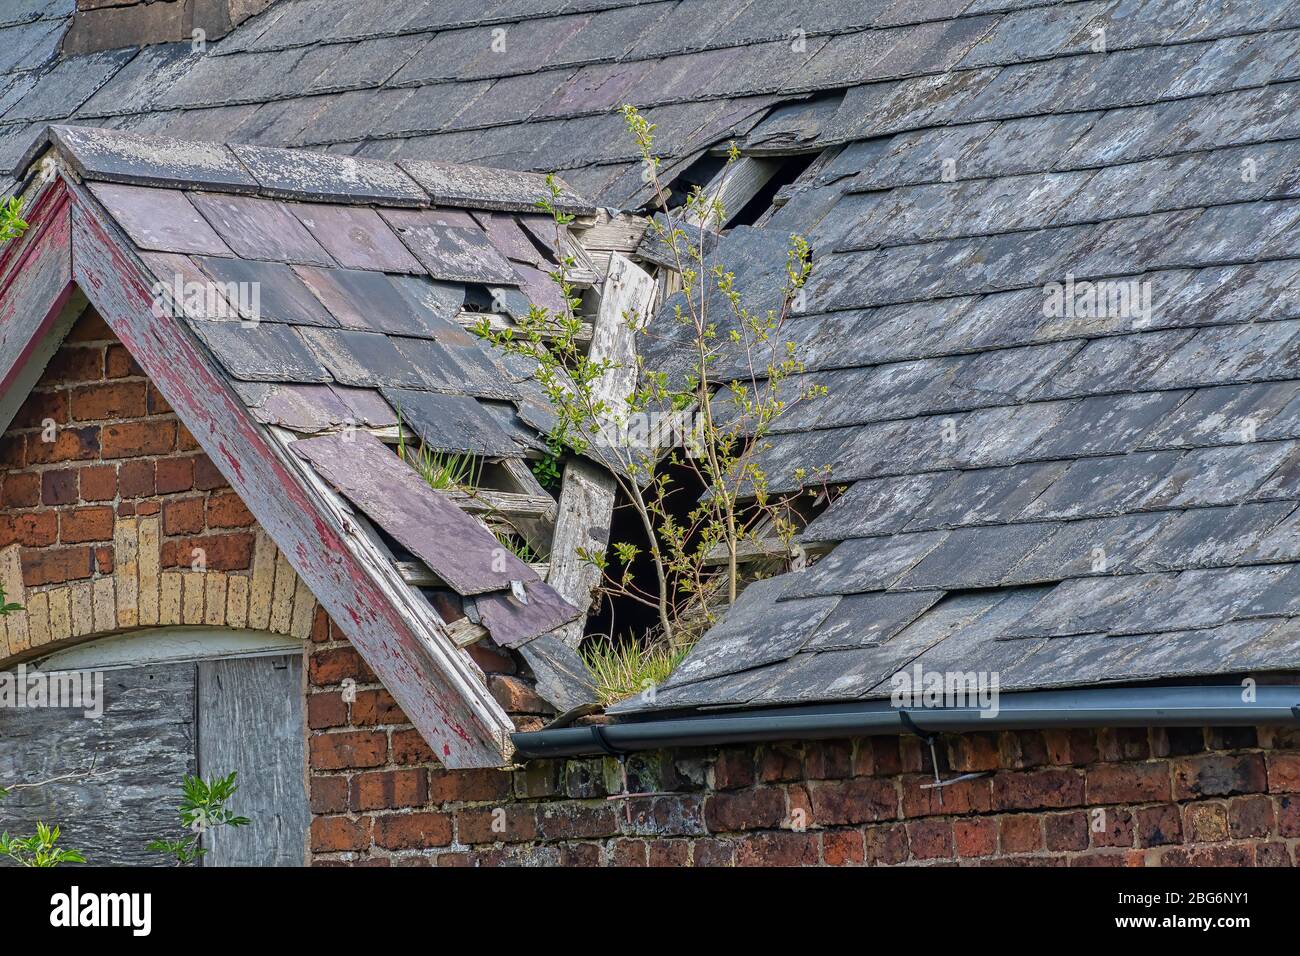 Tuiles endommagées de toiture en ardoise sur un toit piqué sur une maison abandonnée Banque D'Images